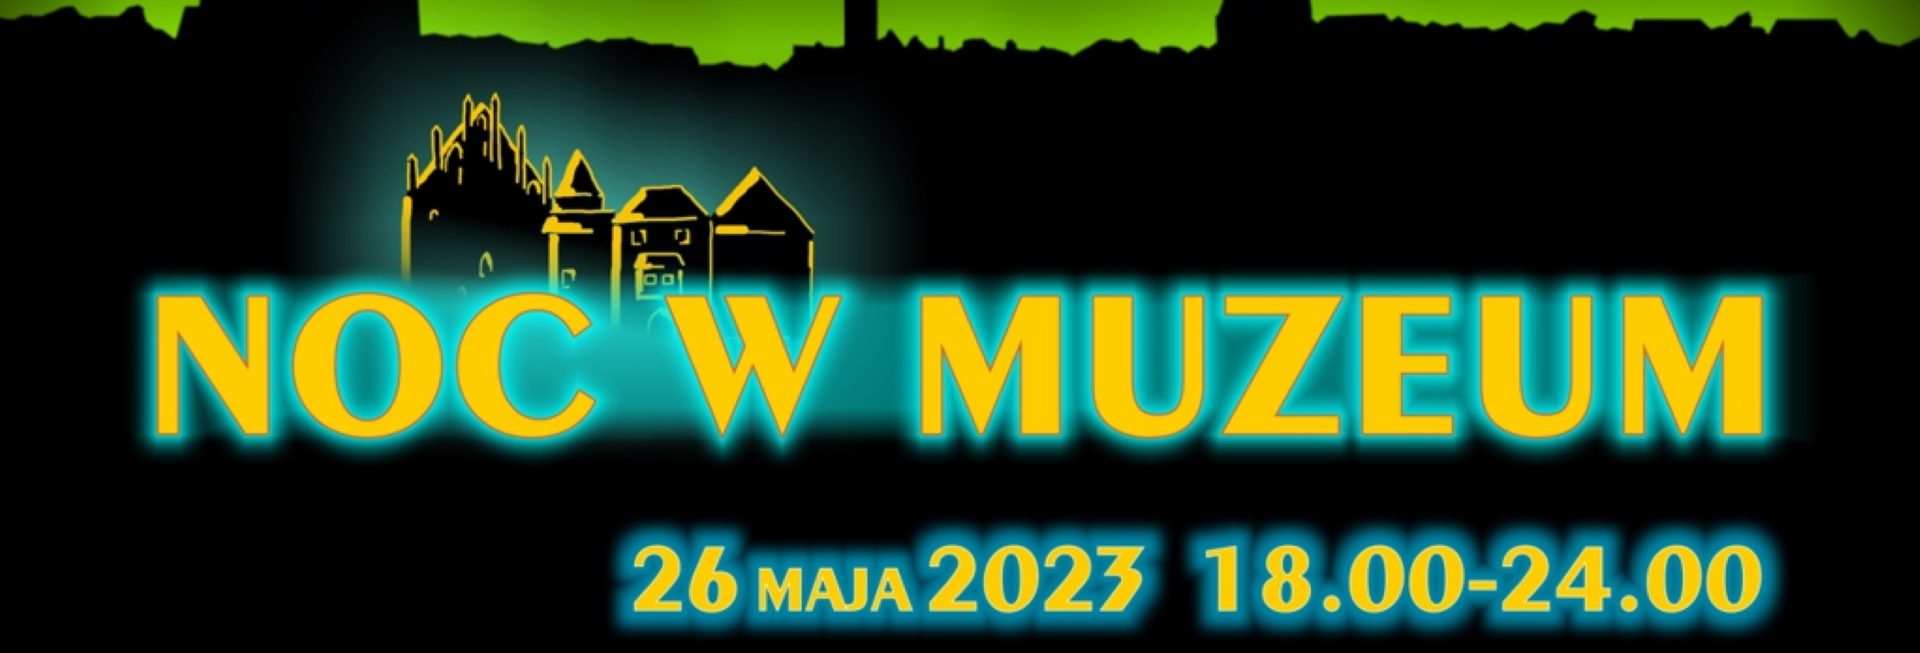 Plakat zapraszający w piątek 26 maja 2023 r. do Kętrzyna na Noc w Muzeum im.Wojciecha Kętrzyńskiego Kętrzyn 2023.